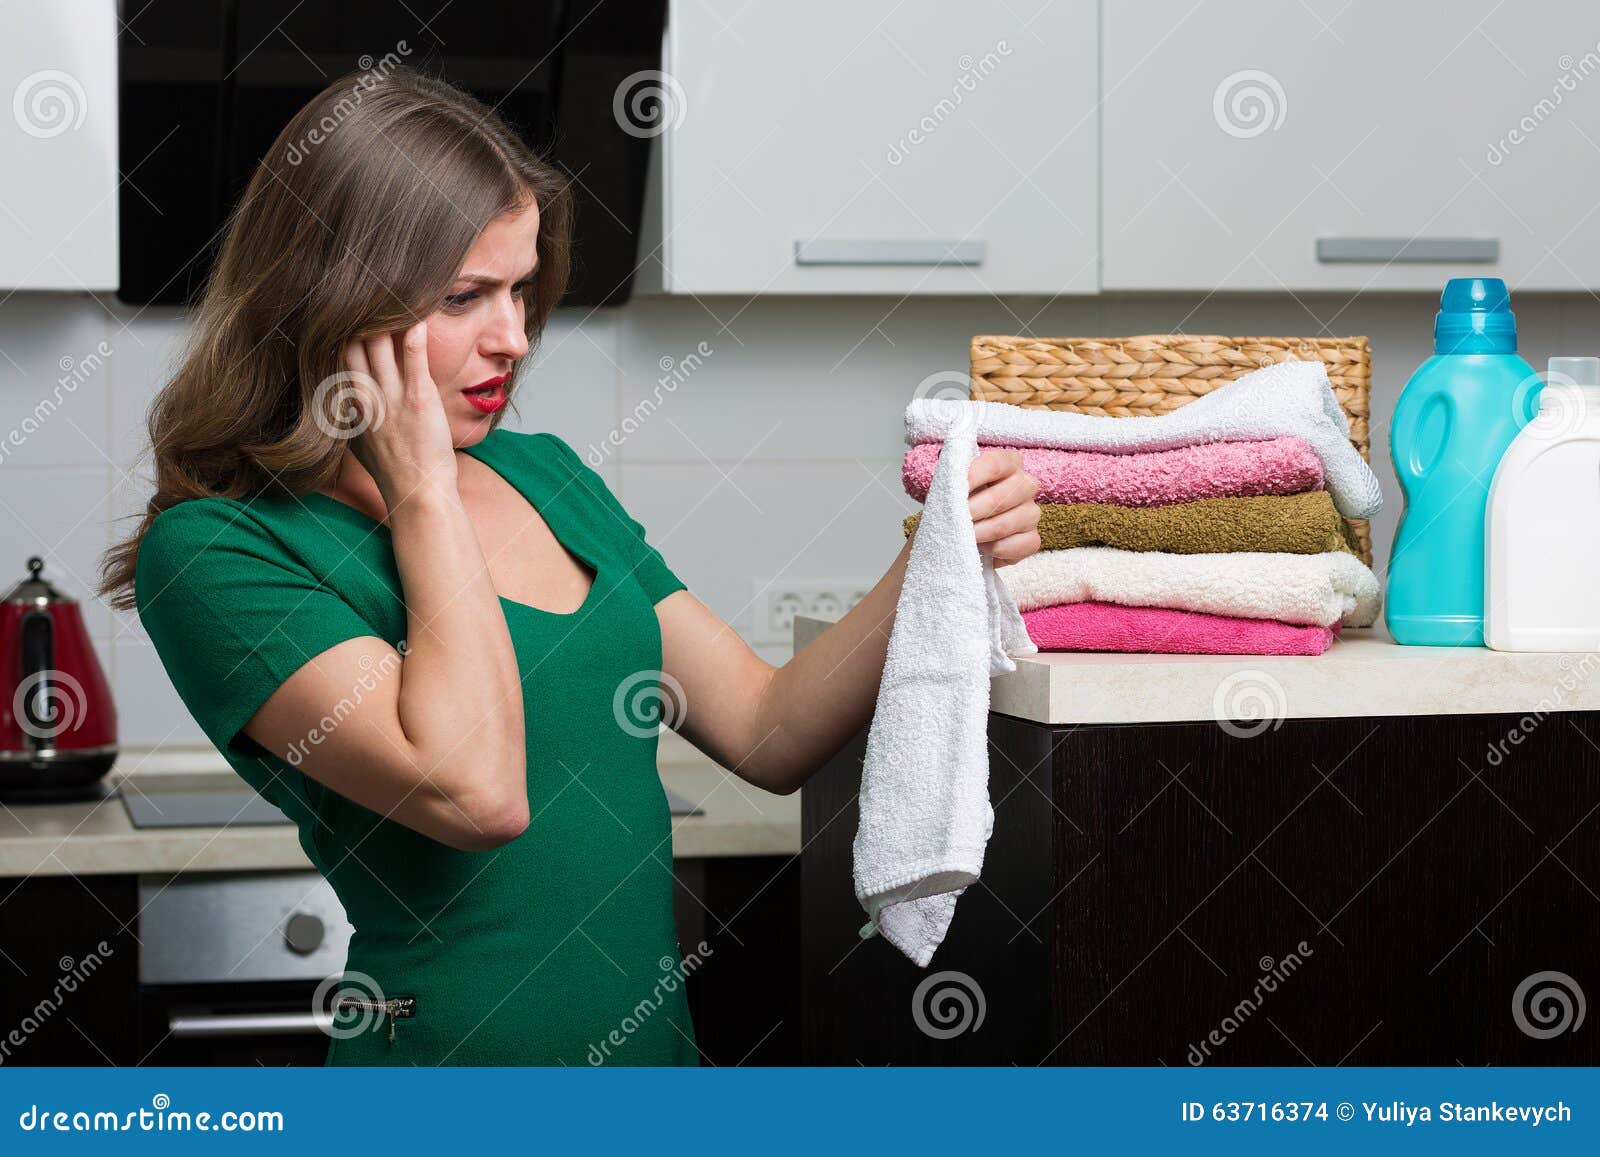 Did the laundry. Стираем вязаные вещи. Женщина несет чистые полотенца. Do Laundry by hand. Женский прячек.